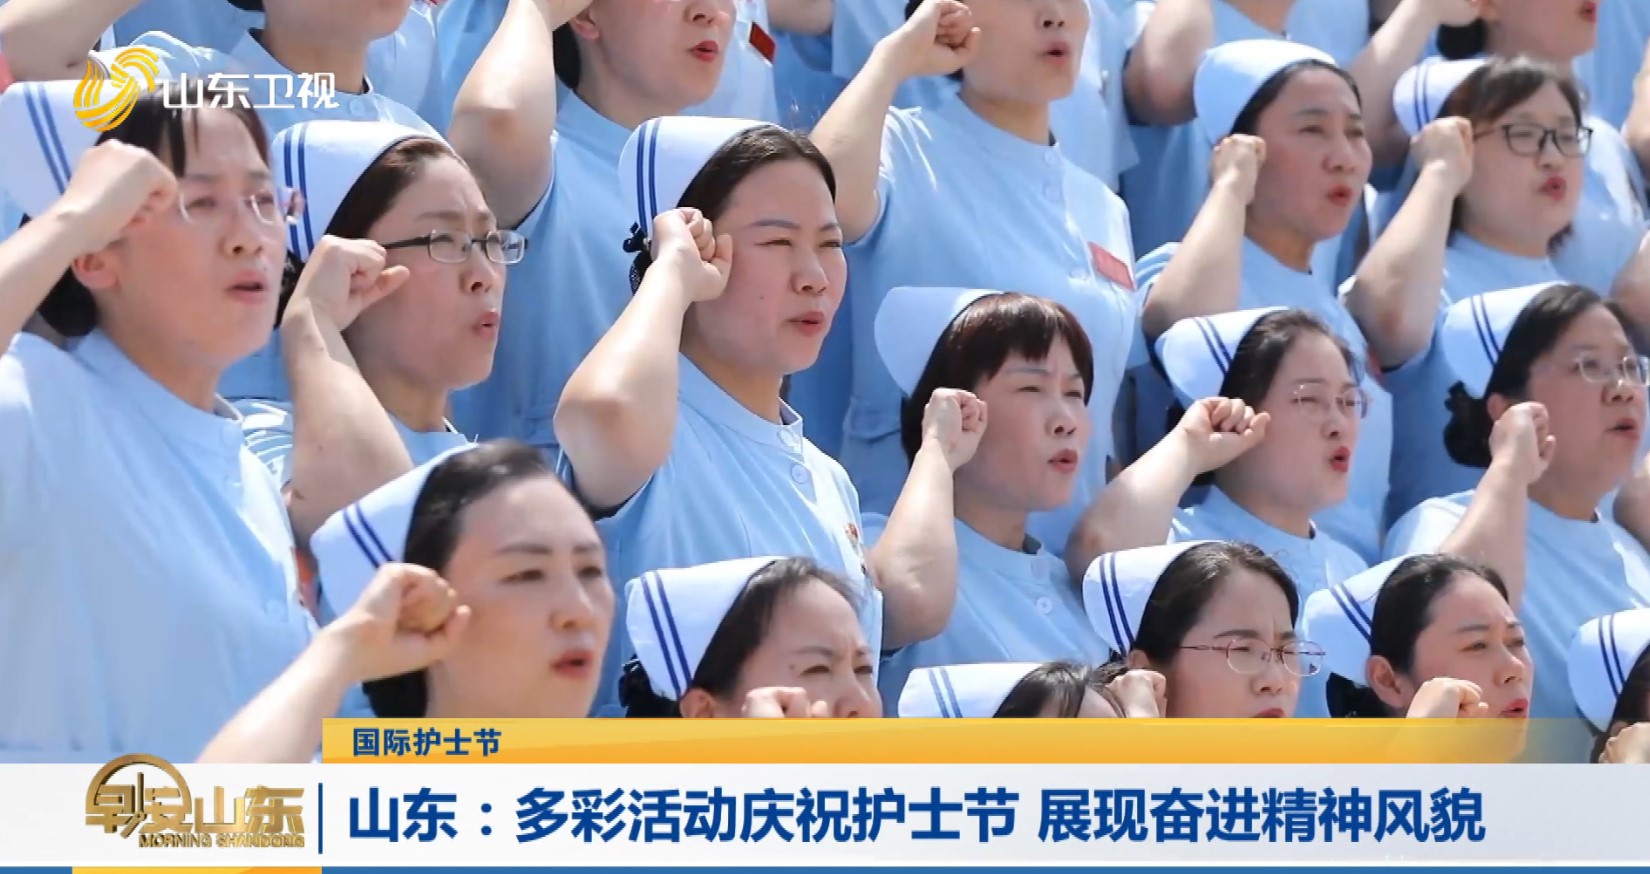 【国际护士节】山东：多彩活动庆祝护士节 展现奋进精神风貌